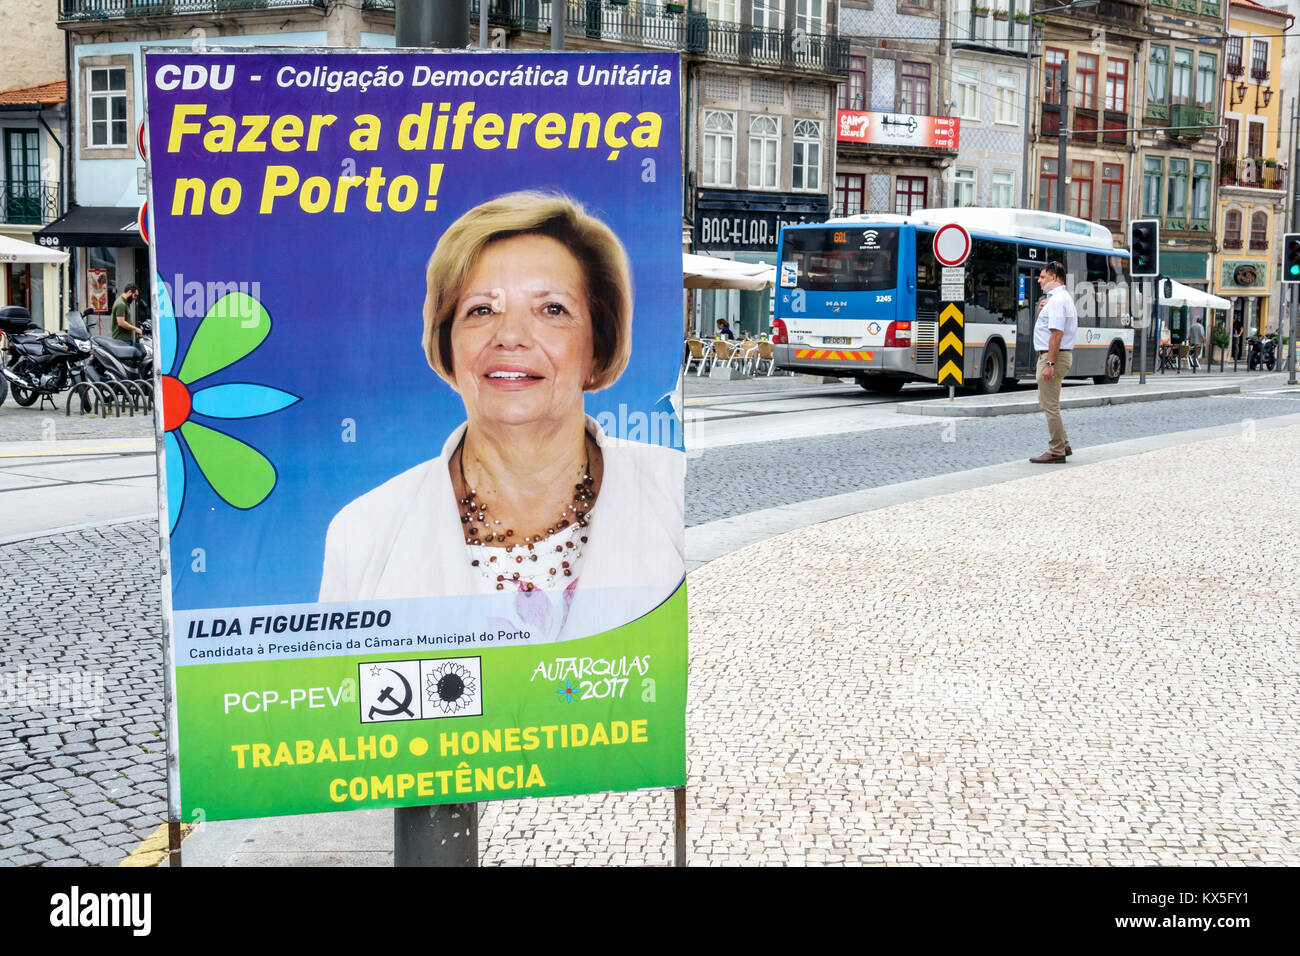 Porto Portugal,historisches Zentrum,Praca Gomes Teixeira,politische Kampagne,Plakat,Kommunalwahlen,Ilda Figueiredo,Koalitionskandidatin,Portugiesische Com Stockfoto